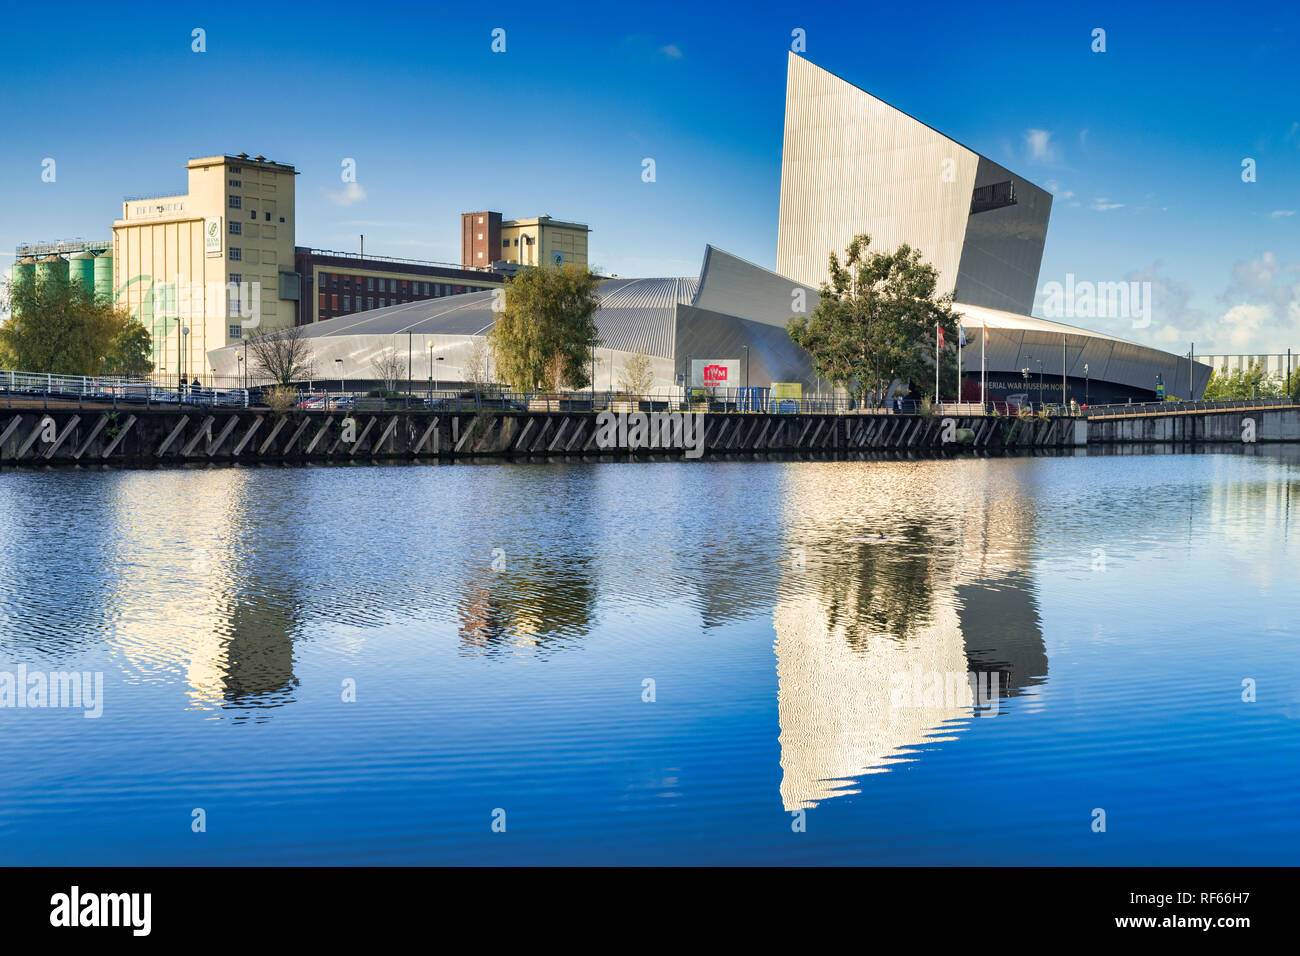 2 novembre 2018 : les quais de Salford, Manchester, UK - Imperial War Museum North, qui se reflètent dans le bleu profond de l'eau le Manchester Ship Canal, sur un beauti Banque D'Images